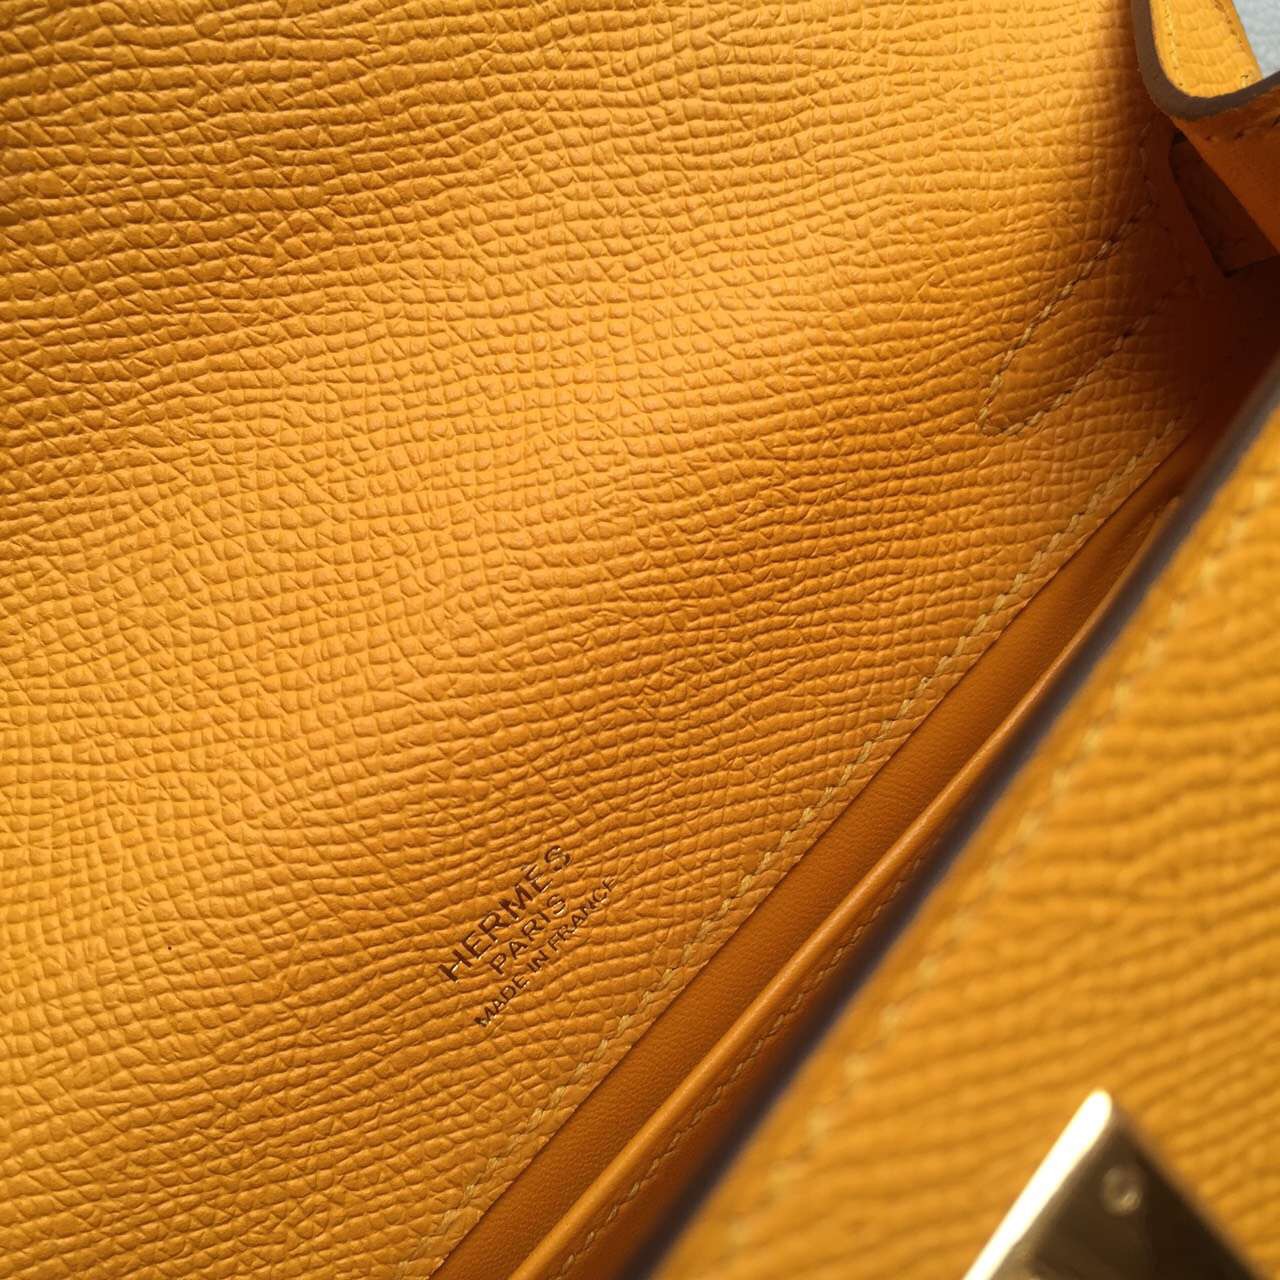 Hermes Bag Website 9V Sun Yellow Epsom Leather Mini Kelly Bag 22cm